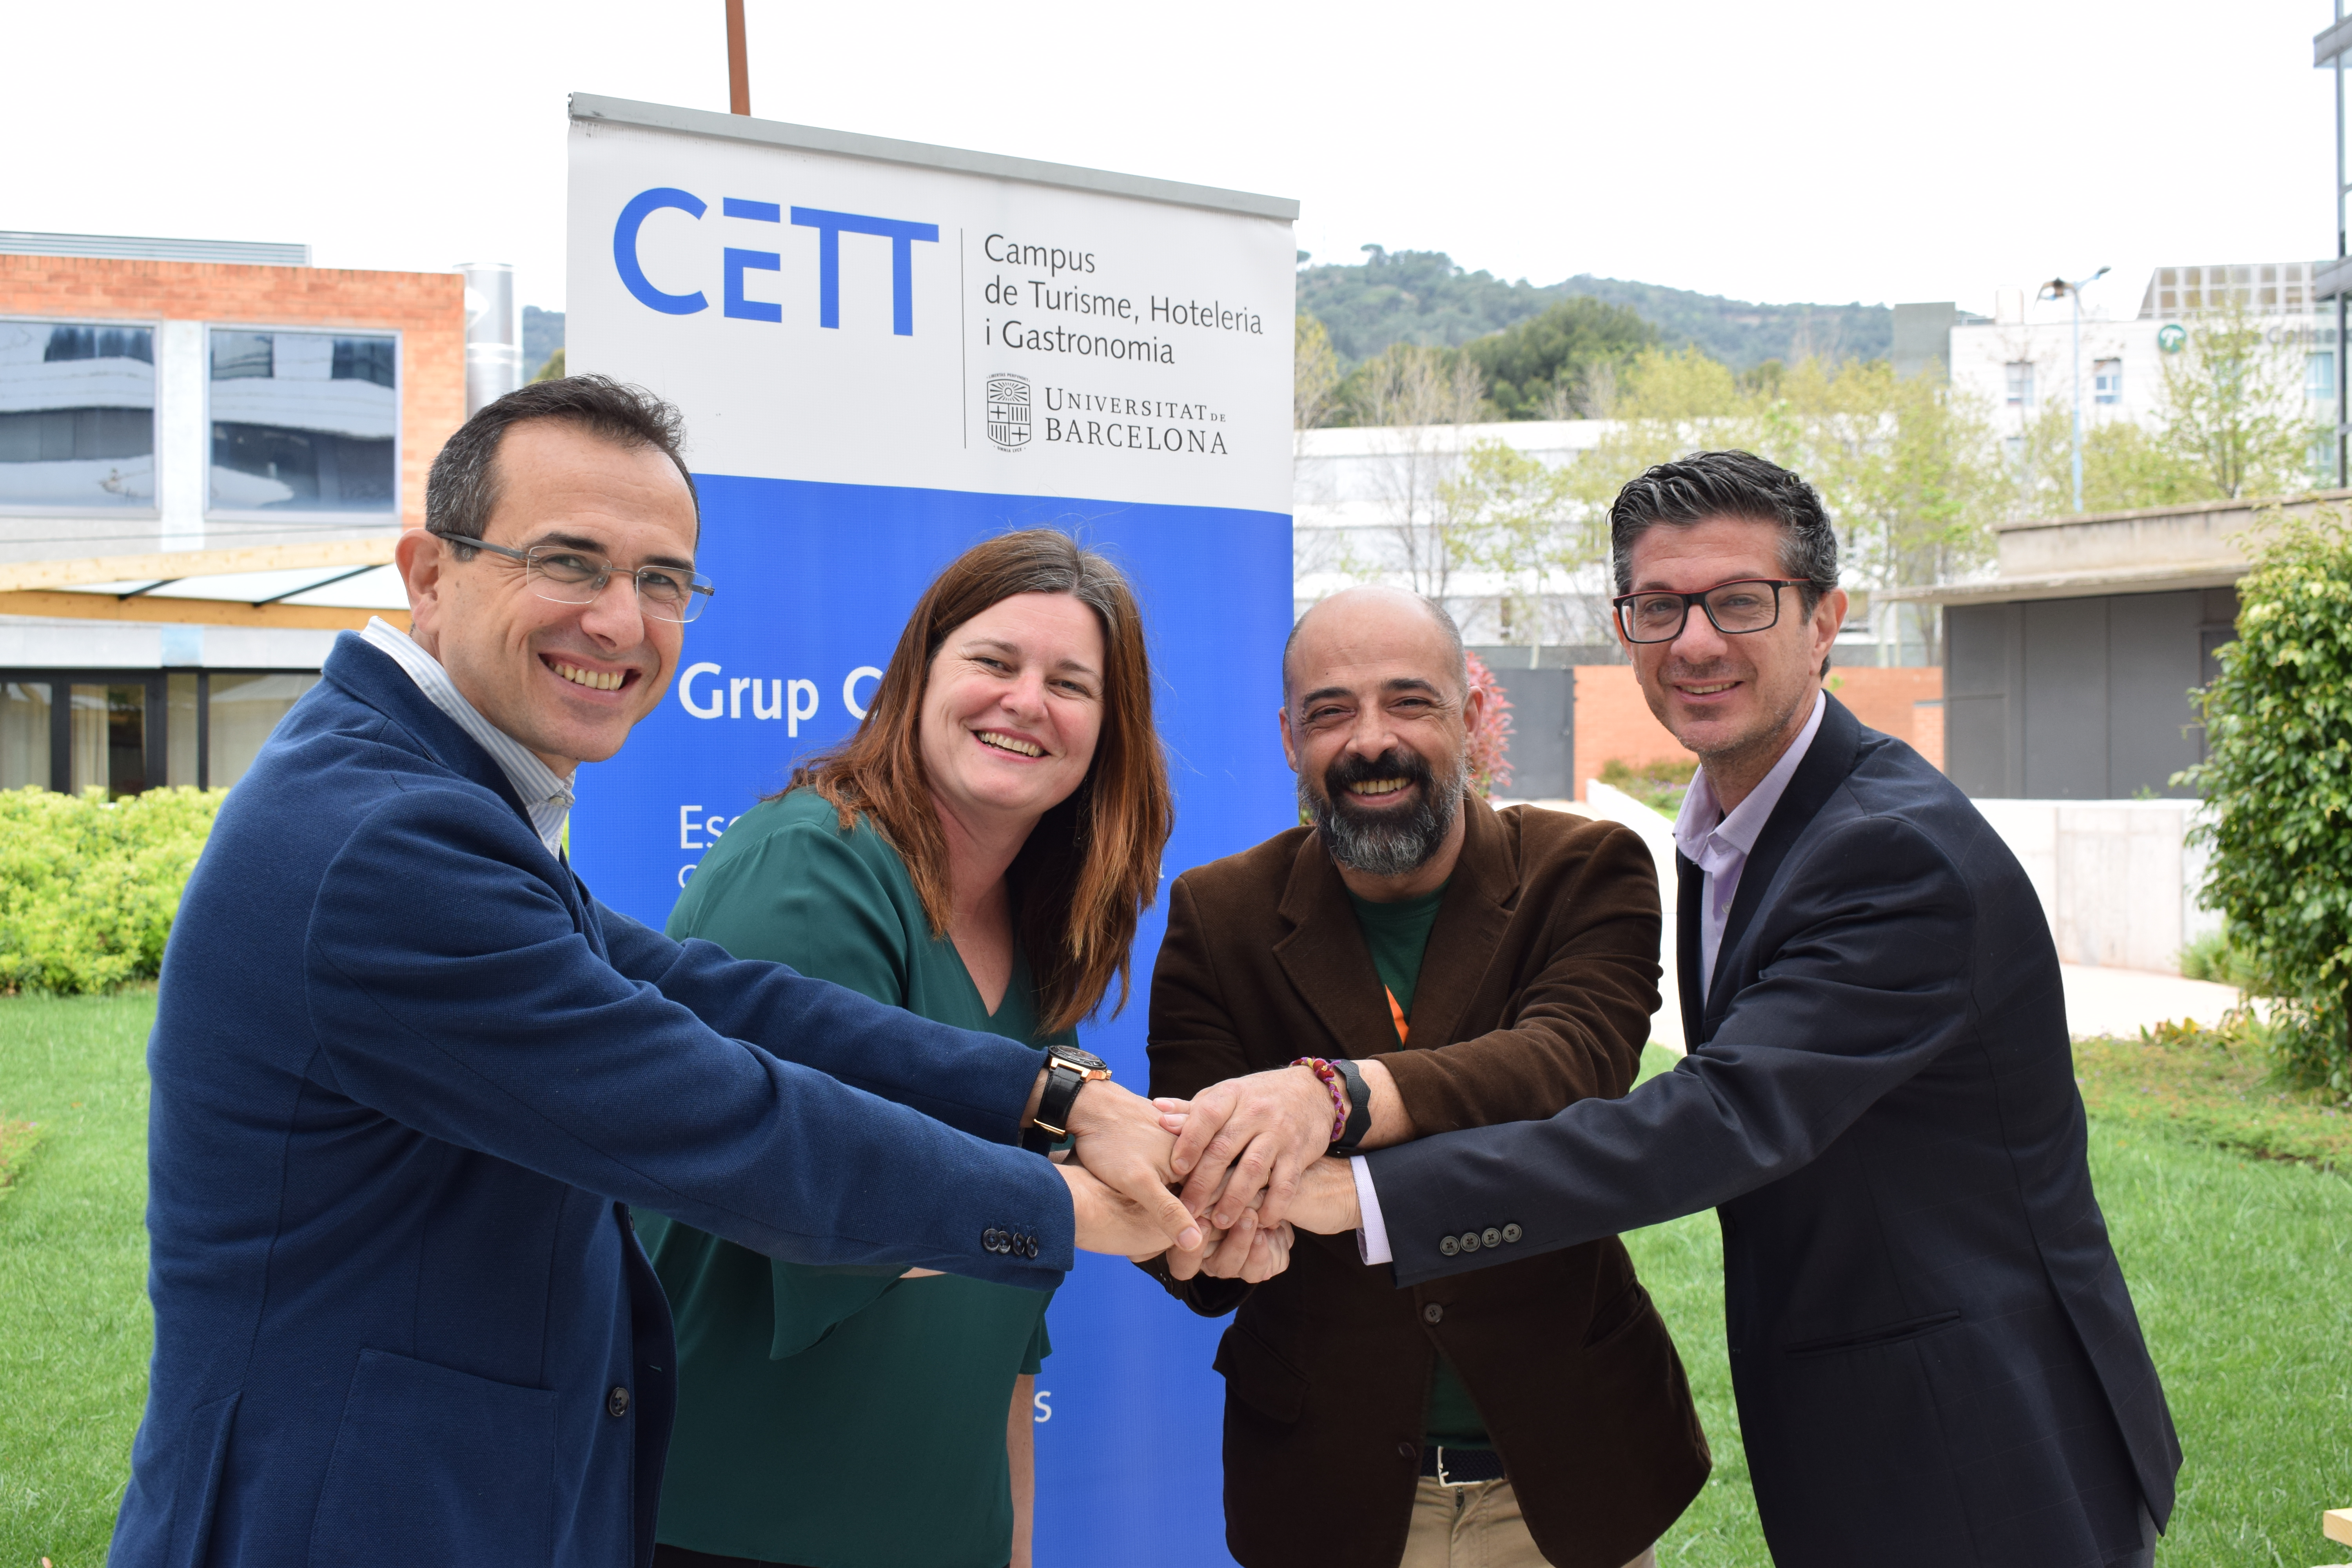 Fotografia de: El CETT i IBTA (Iberian Business Travel Association) signen un acord en pro de la formació i el desenvolupament professional | CETT